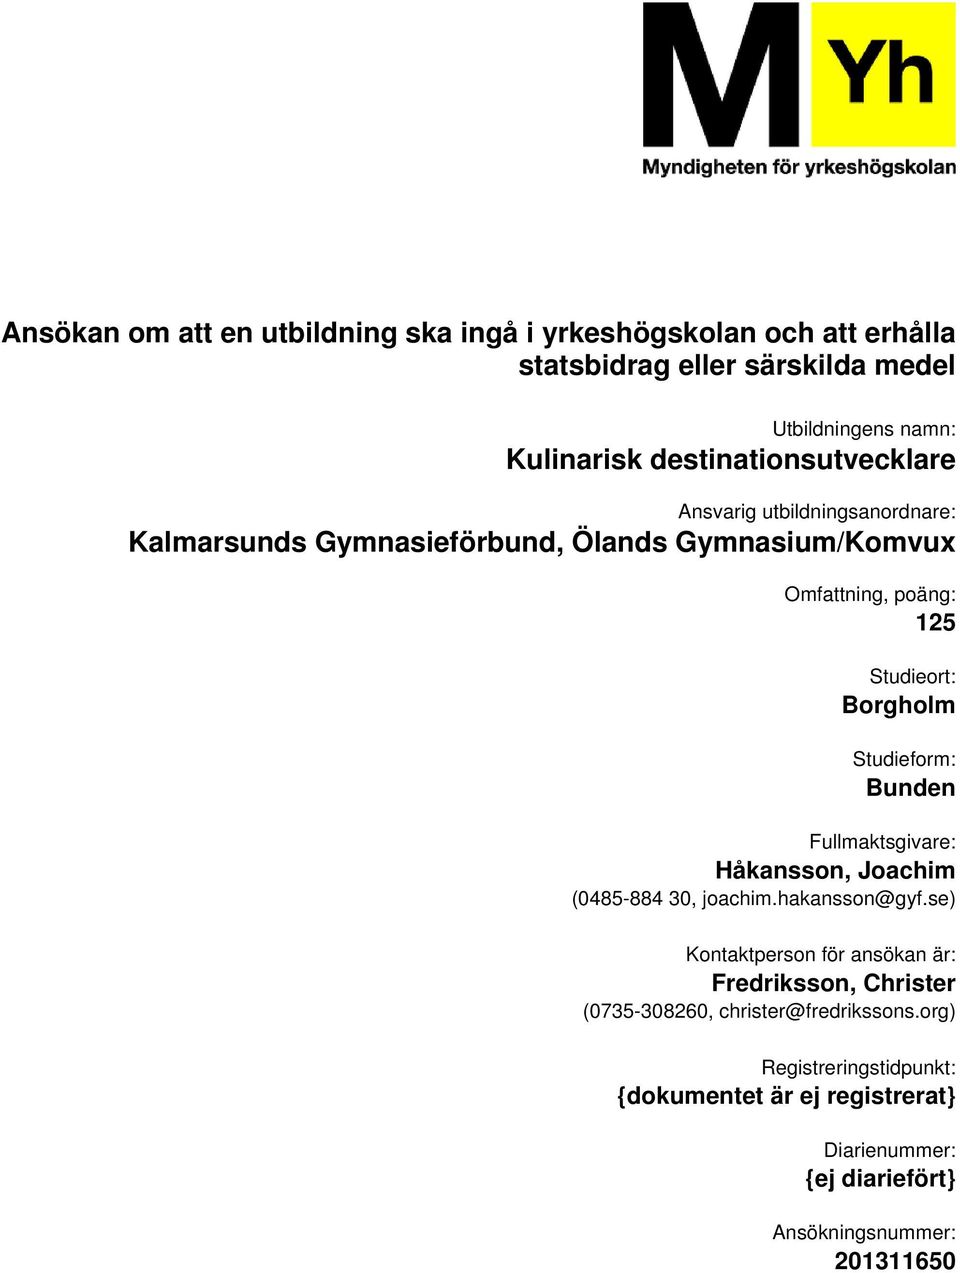 Borgholm Studieform: Bunden Fullmaktsgivare: Håkansson, Joachim (0485-884 30, joachim.hakansson@gyf.